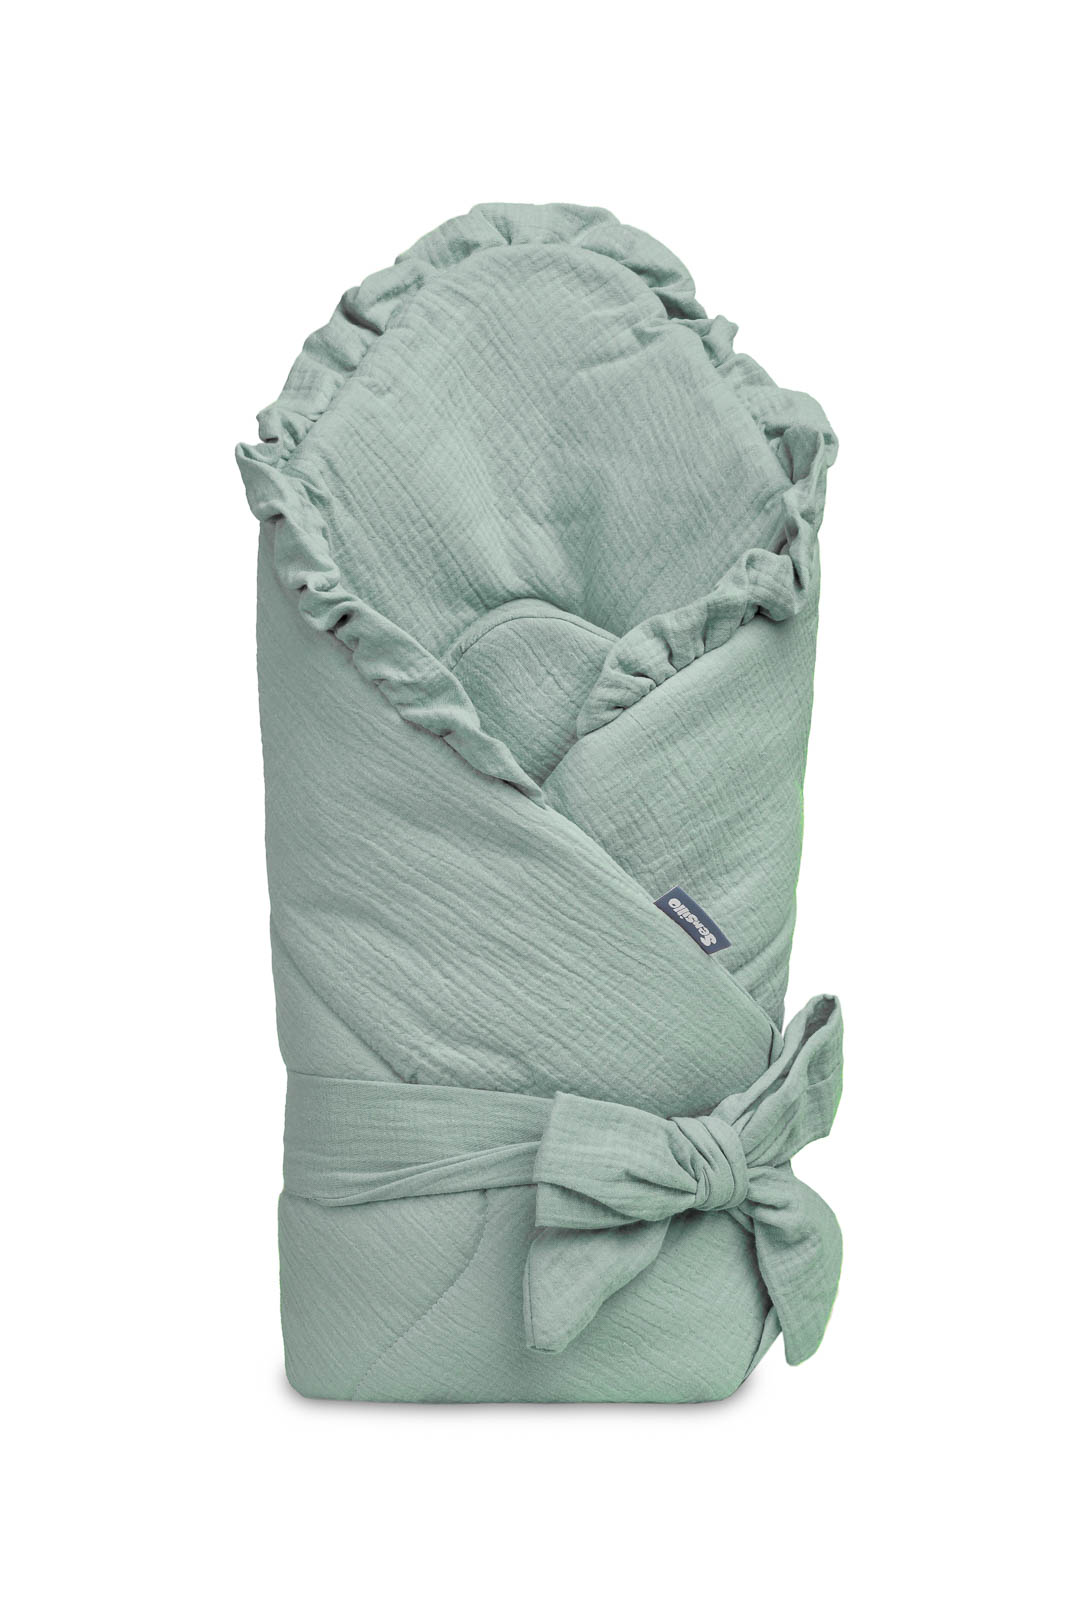 Baby wrap 90×90 – Khaki